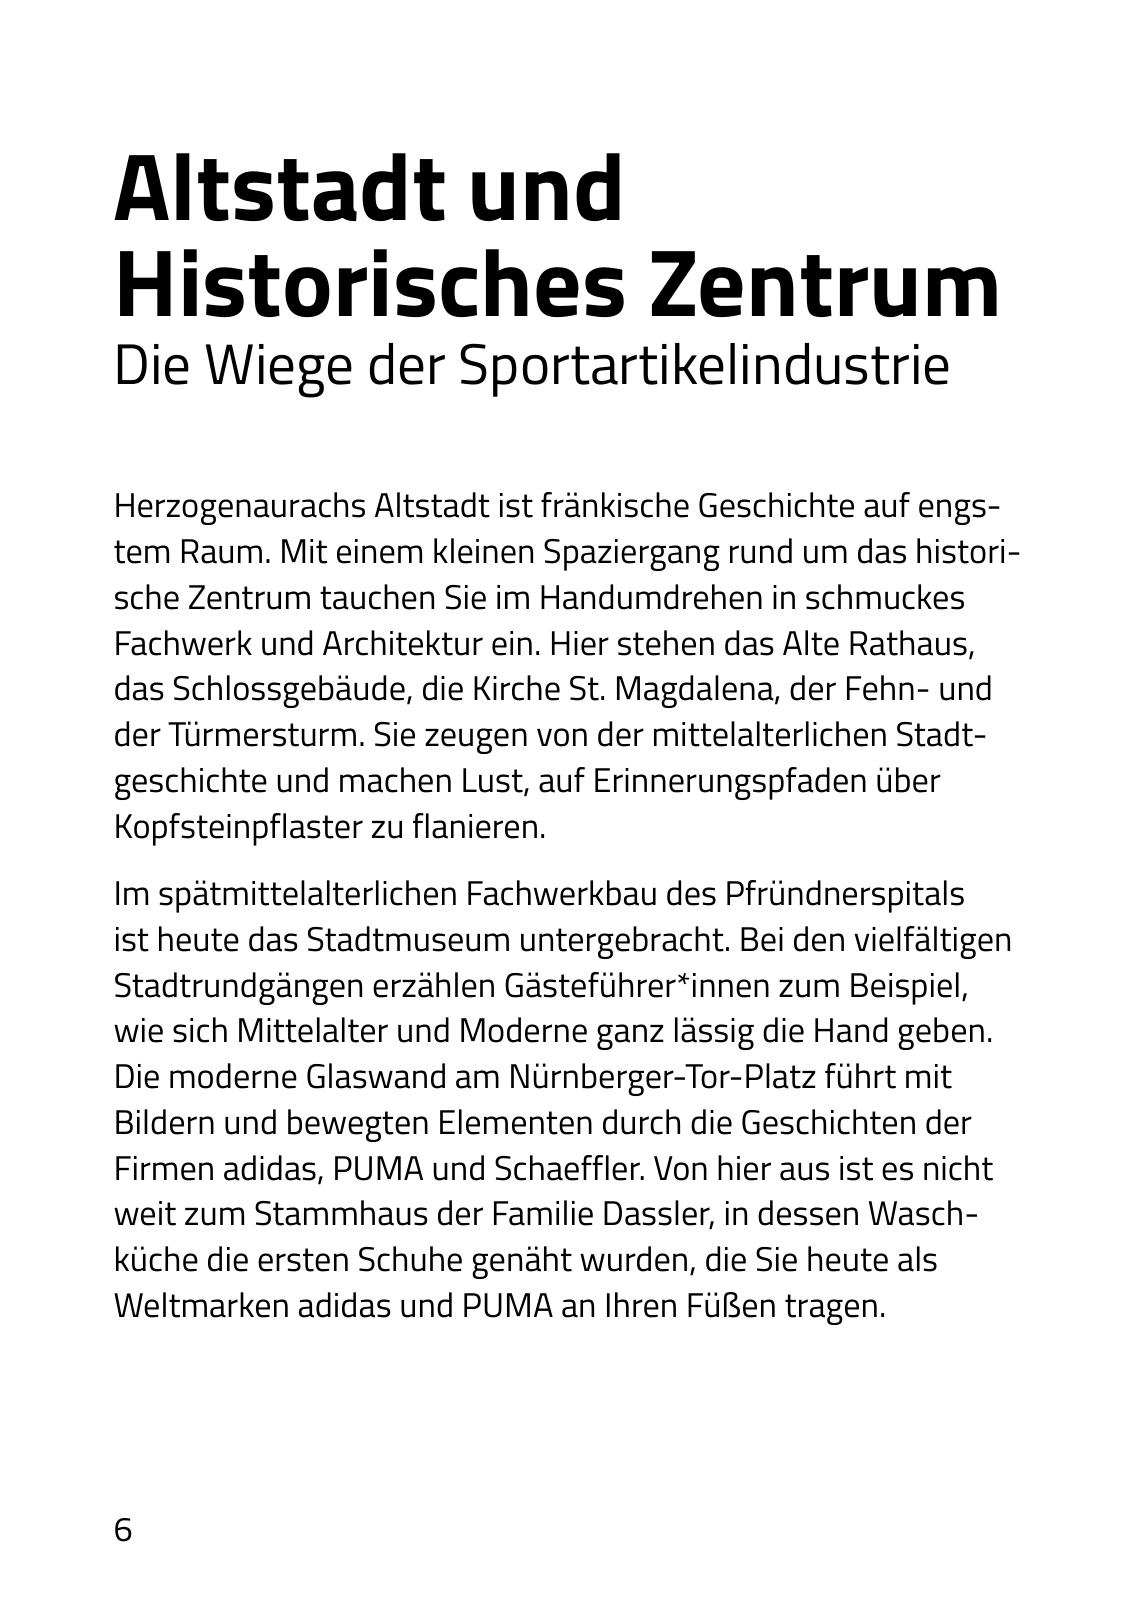 Vorschau herzoStyle - Herzogenaurach erleben Seite 6